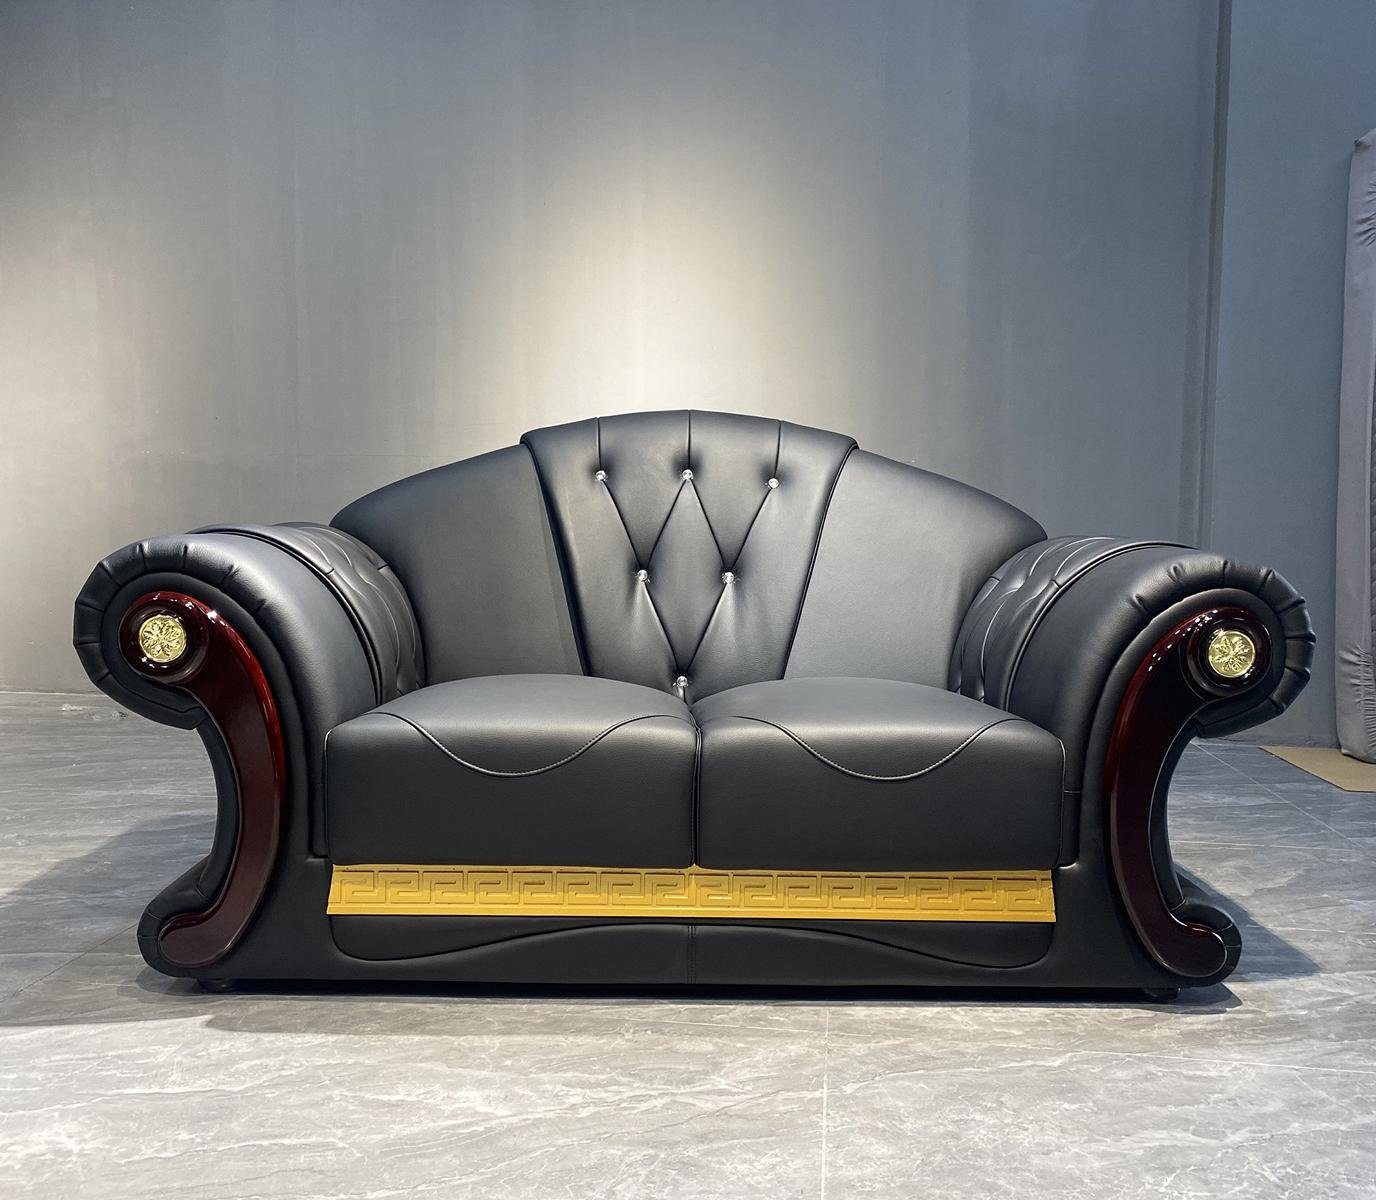 JVmoebel Sofa Chesterfield Zweisitzer Couch Design Möbel Klassische Sofa, Made in Europe